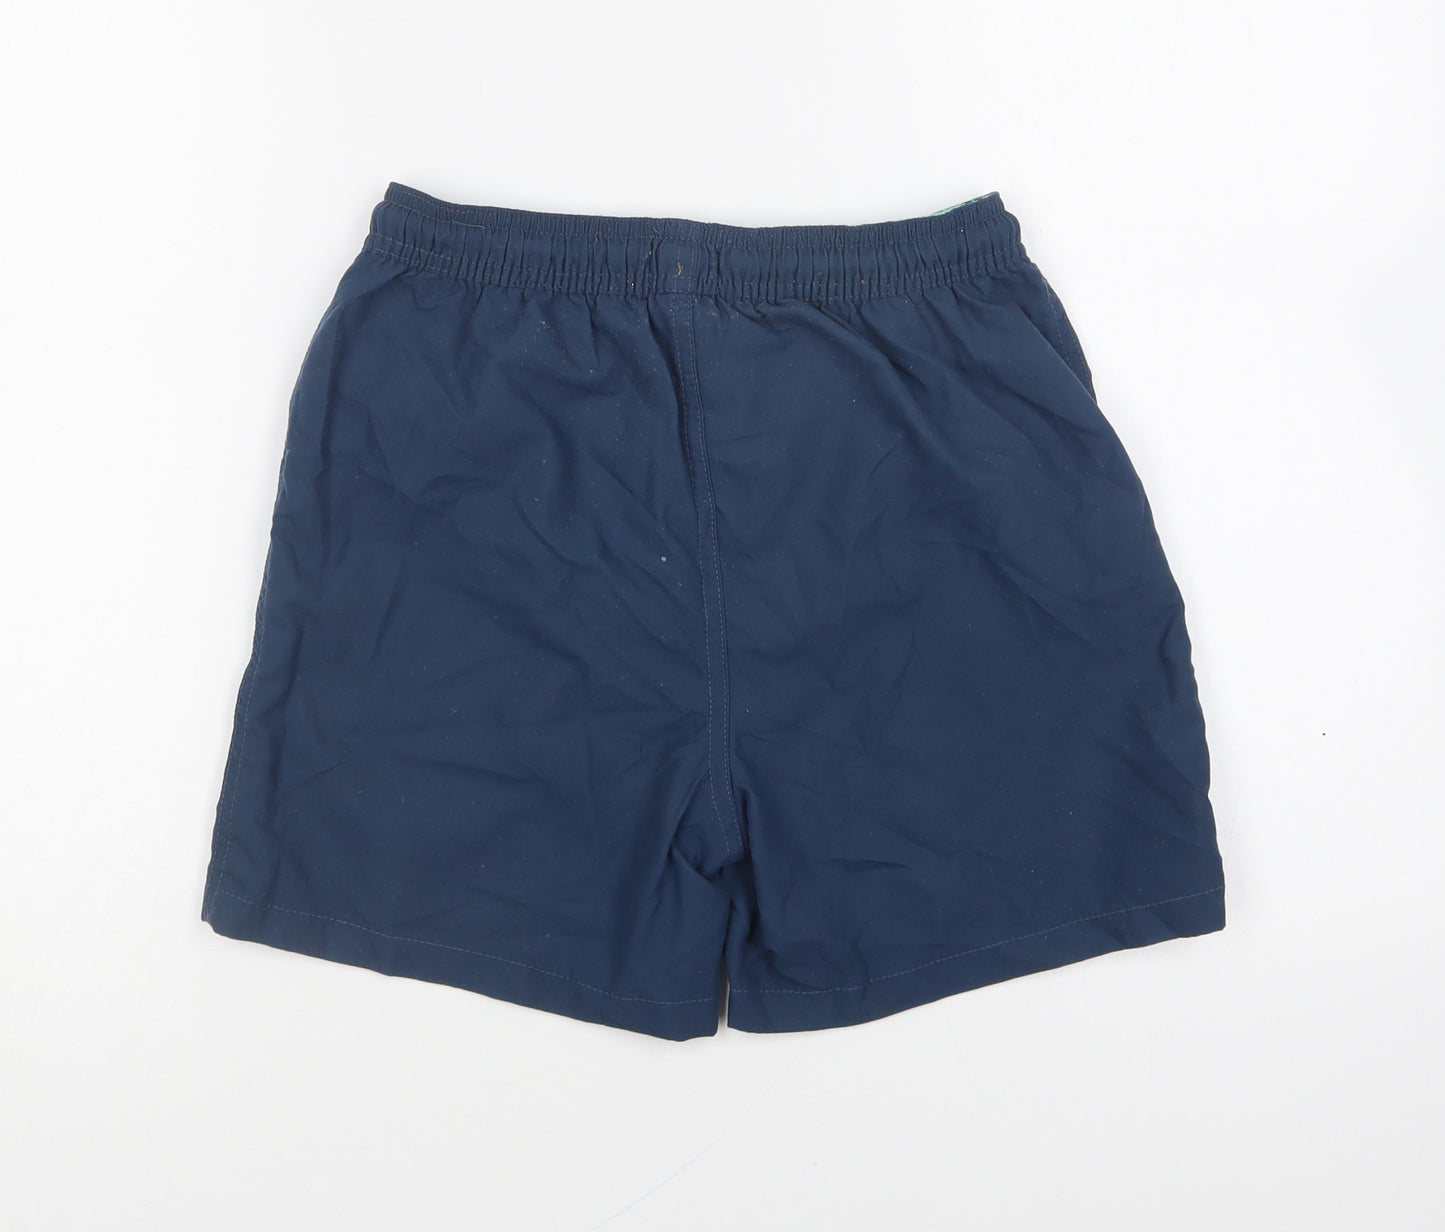 West Coast Boys Blue Polyester Sweat Shorts Size 8-9 Years Regular Drawstring - Swim Shorts